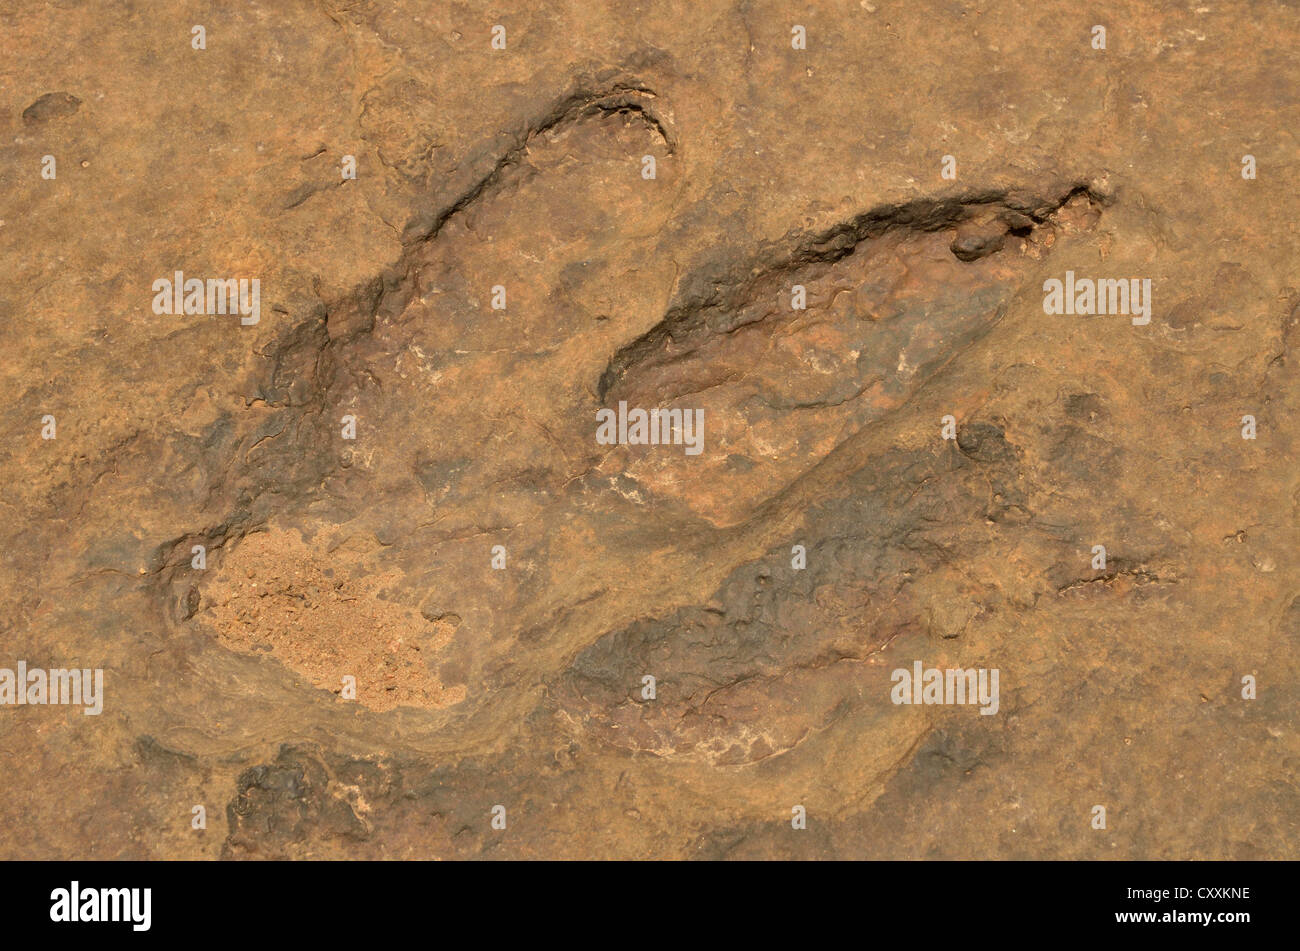 Empreintes fossilisées d'un Tyrannosaurus rex près du village de Mananga, Cameroun, Afrique centrale, Afrique Banque D'Images